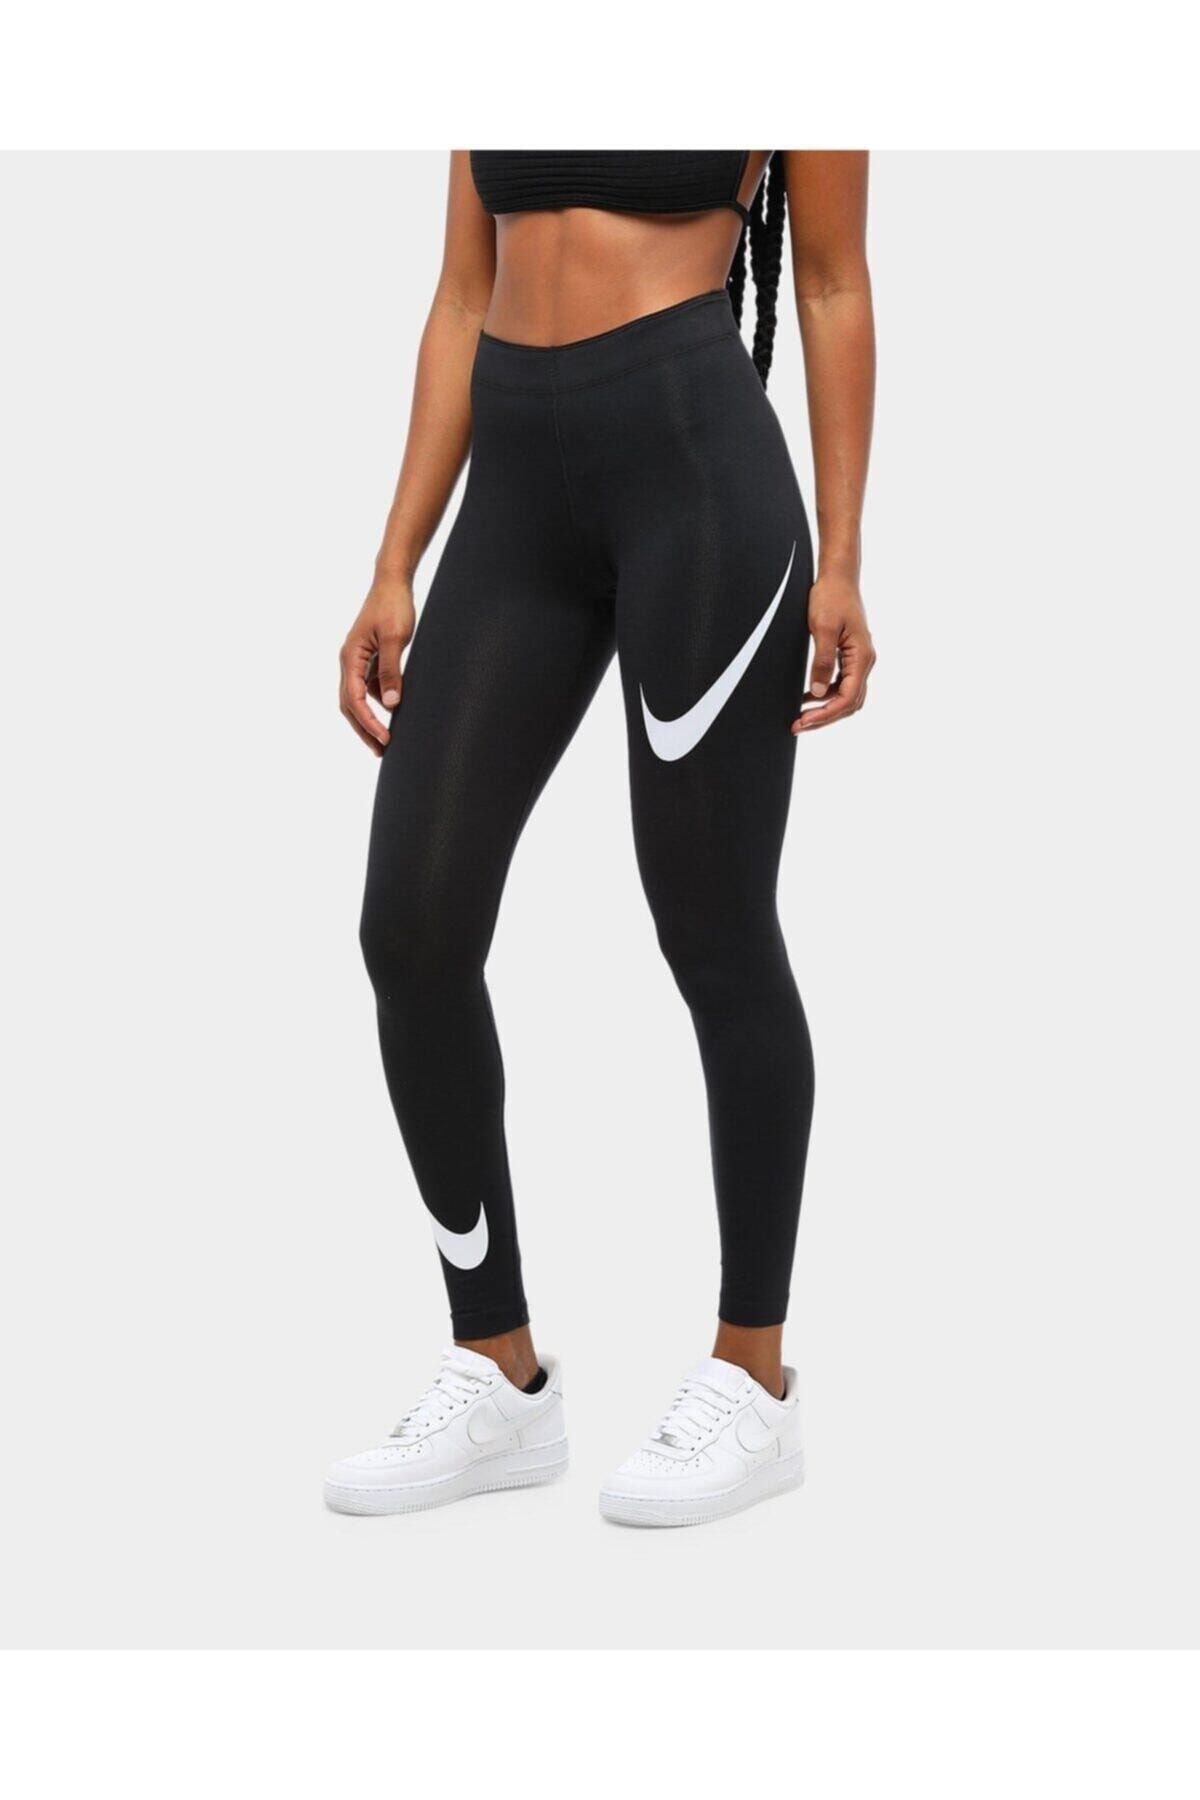 Nike Siyah Kadın Spor Tayt - Kadın Sportswear Leg-a-see Swoosh Tayt - Db3896-010